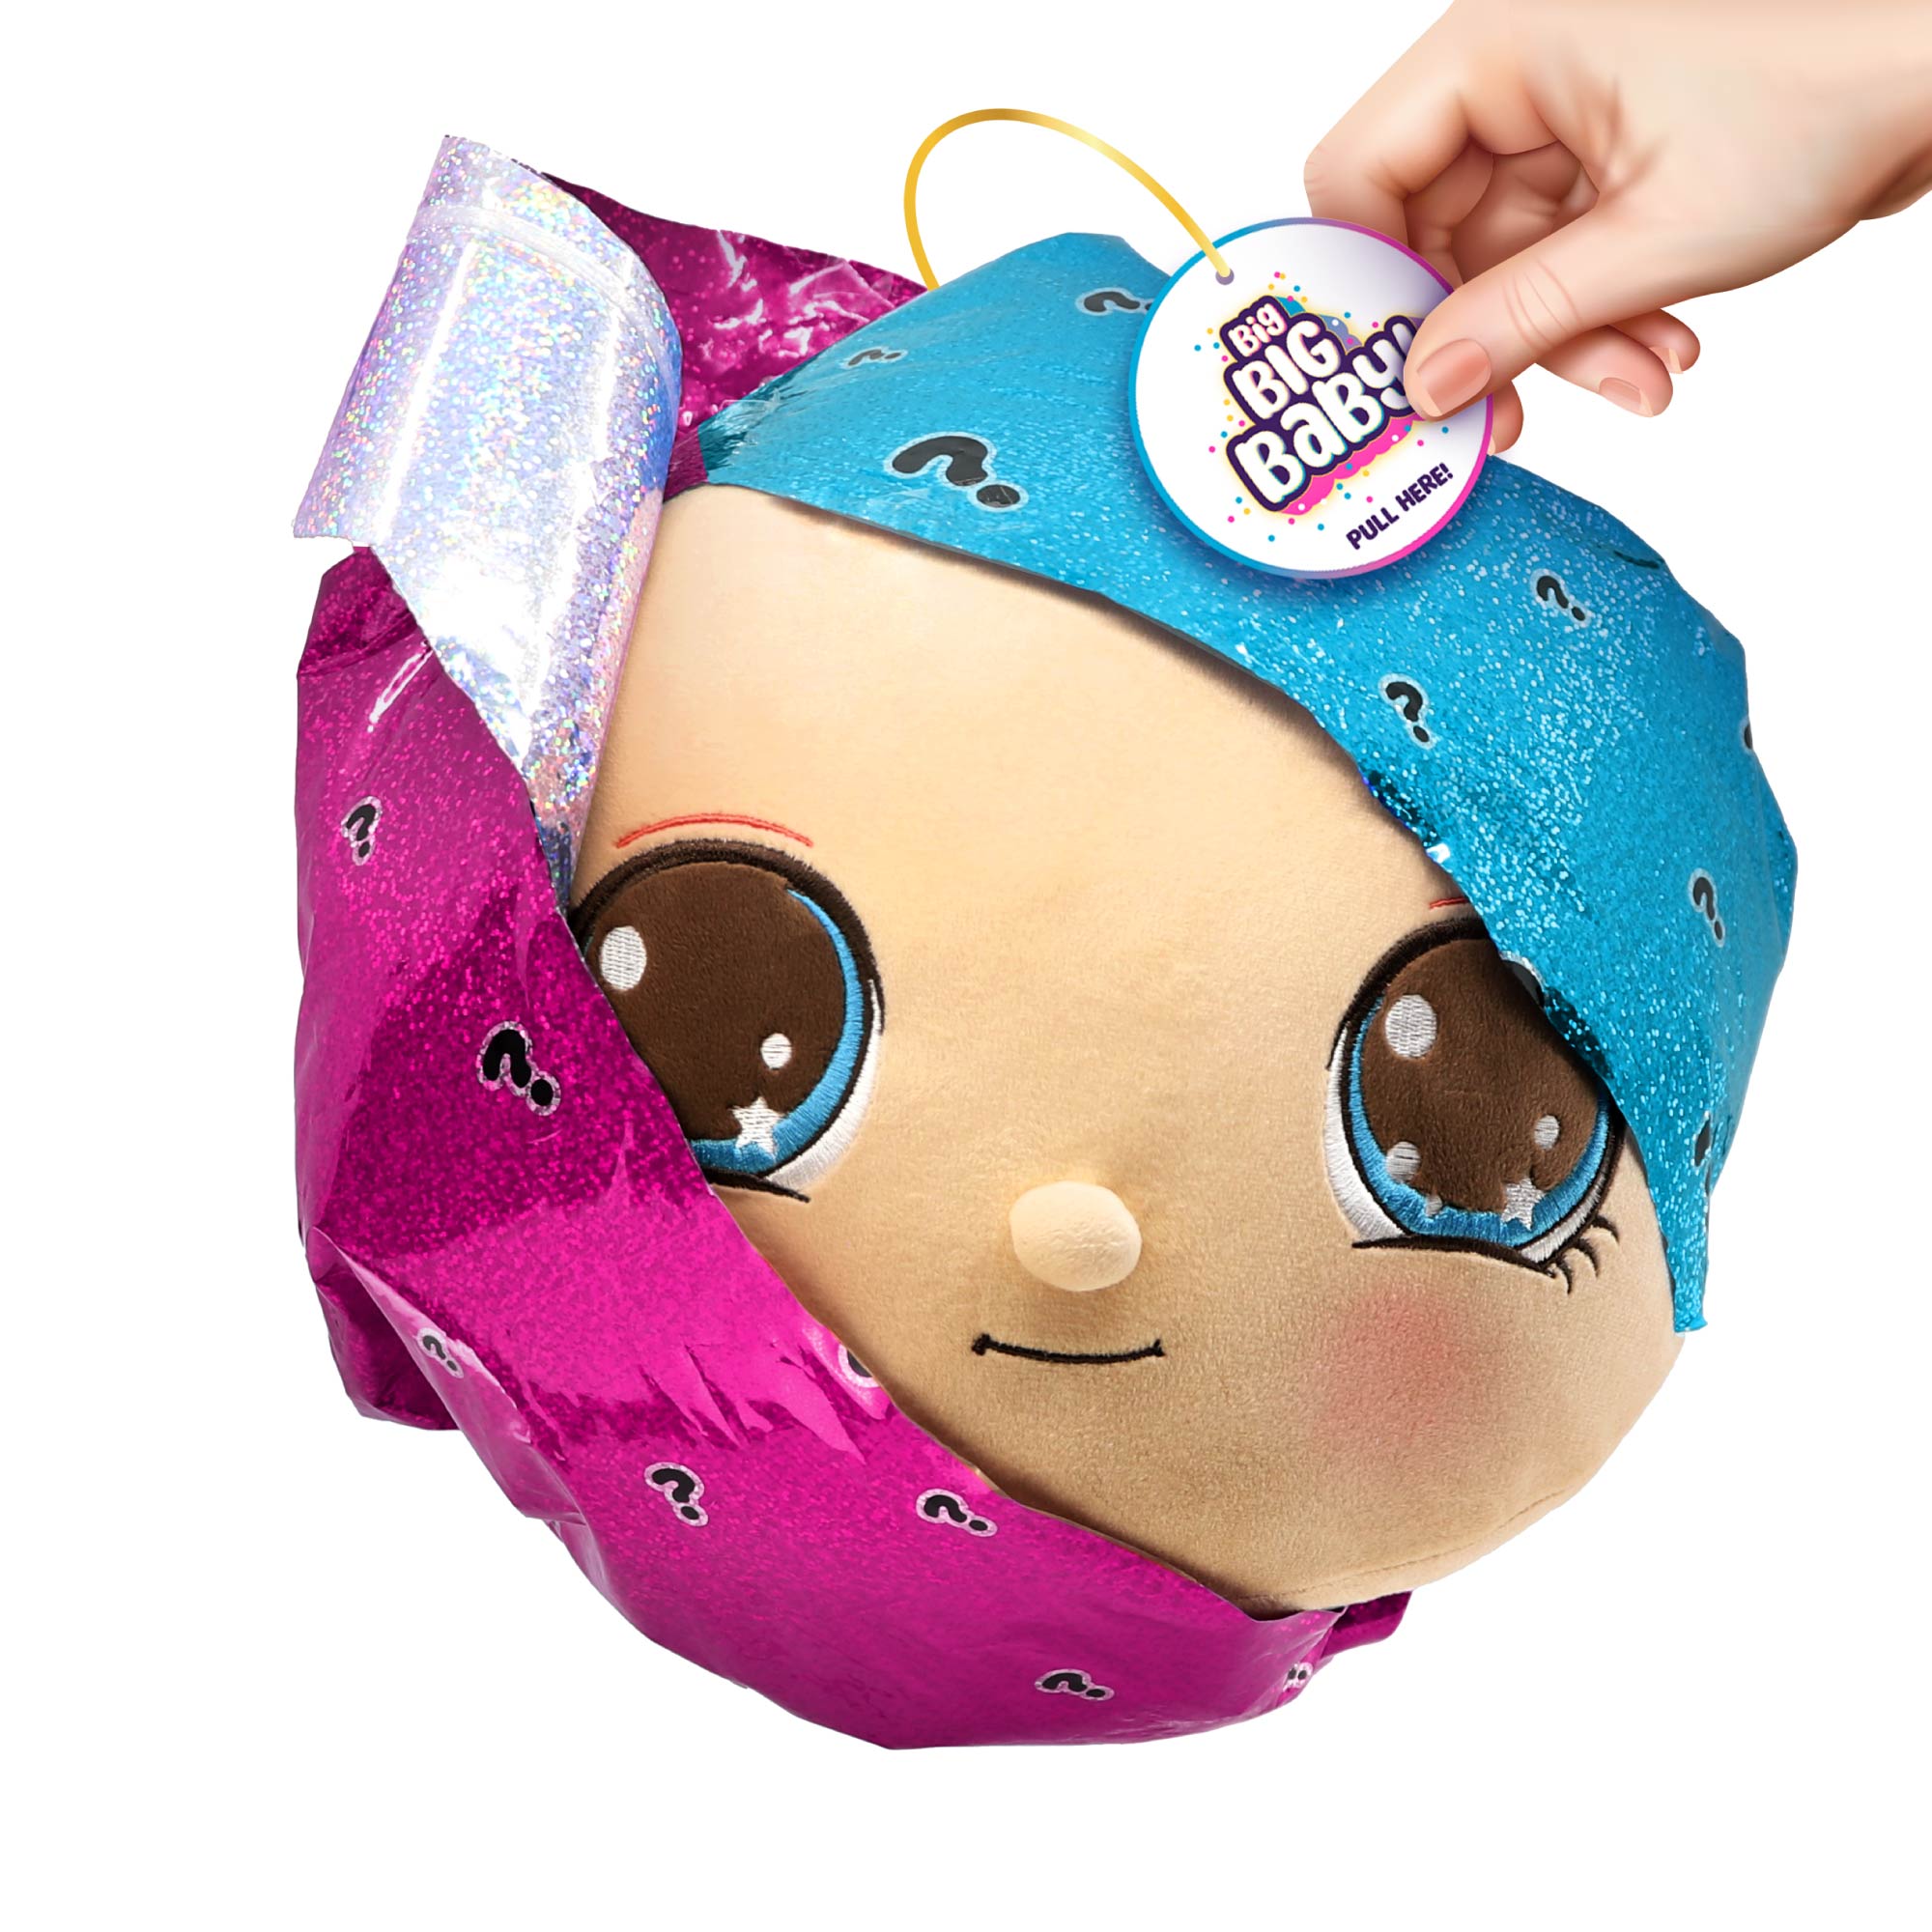 Игрушка сюрприз BIG BIG BABY Мягконабивная интерактивная кукла в шаре с аксессуарами - фото 12